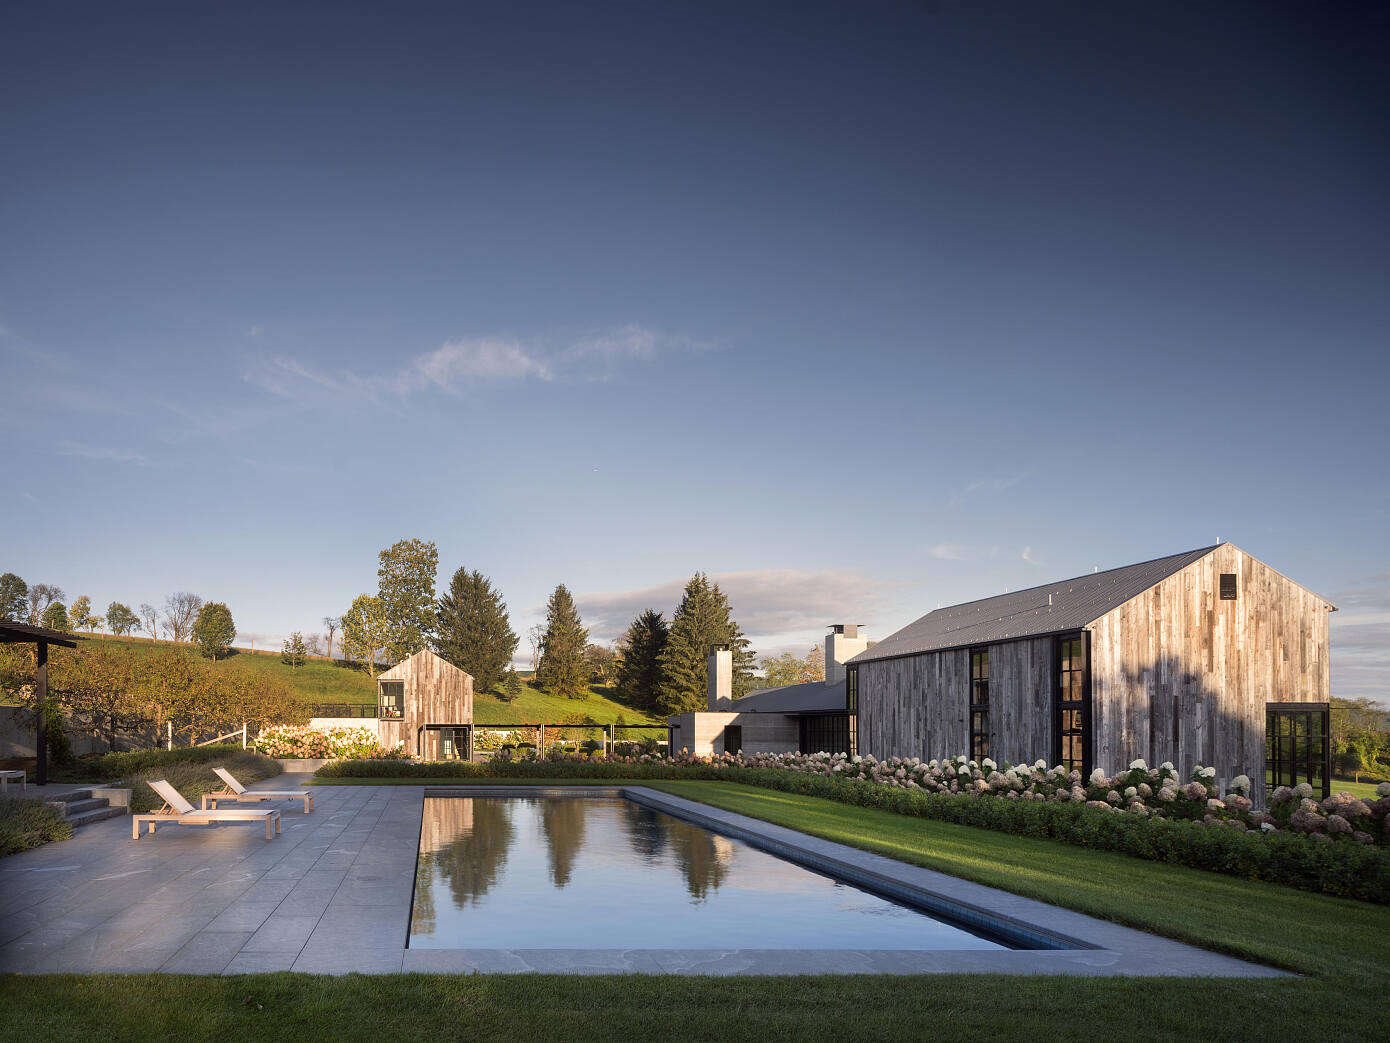 Casa de madera en mitad de la naturaleza hecha por Olson Kundig architects con piscina